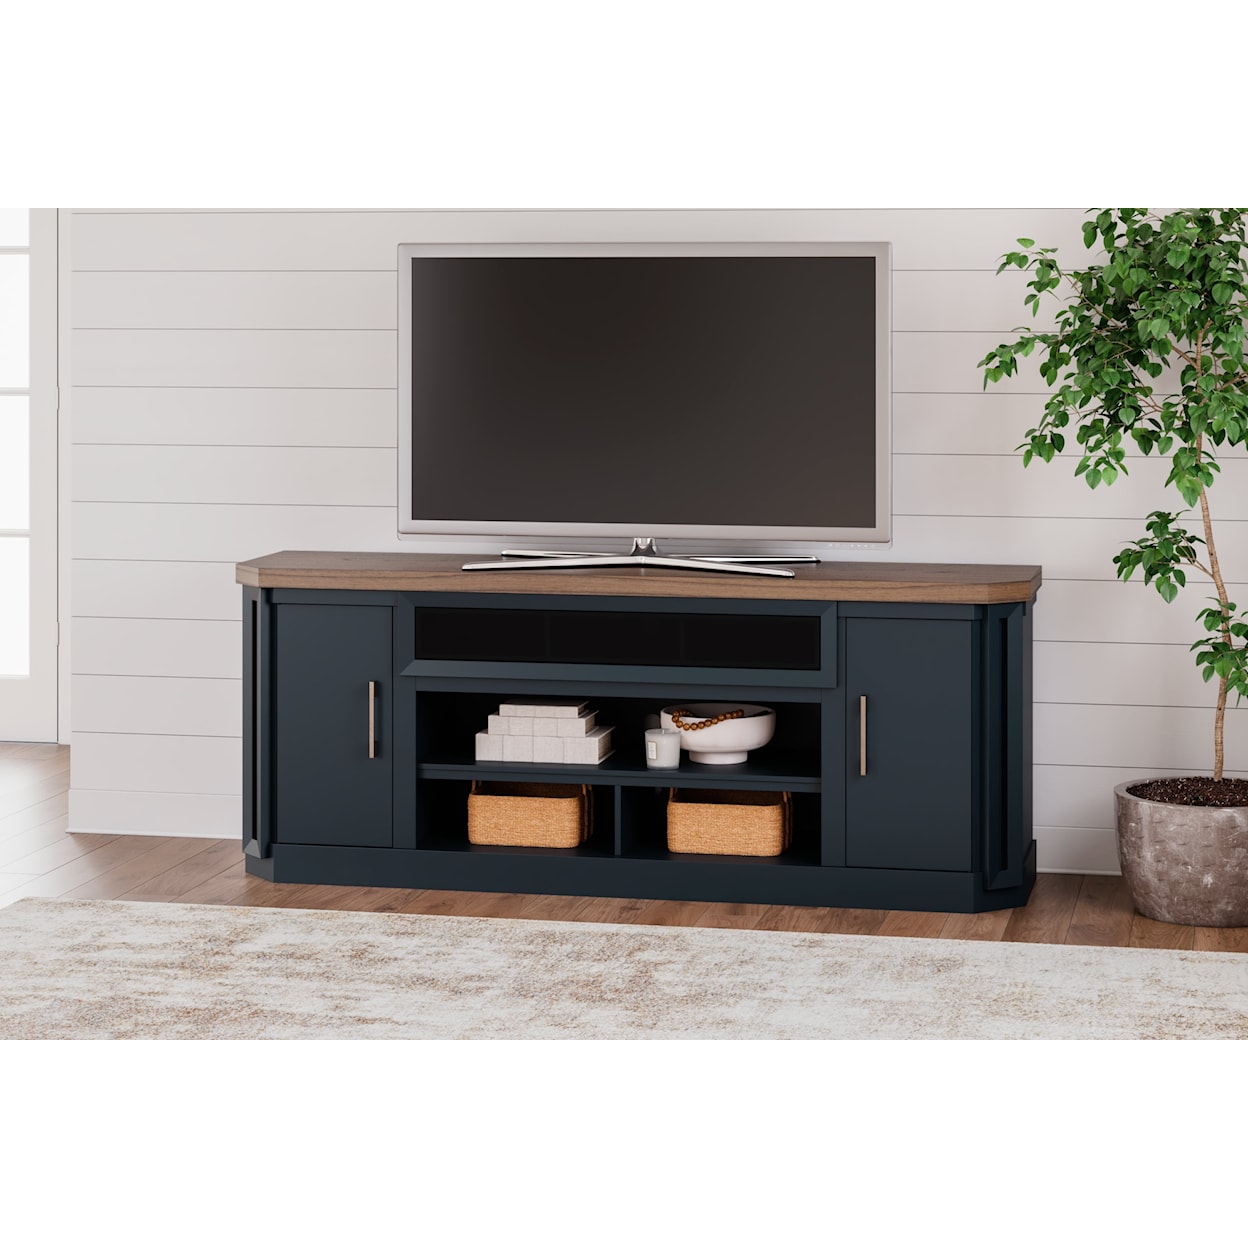 Benchcraft Landocken XL TV Stand w/Fireplace Option